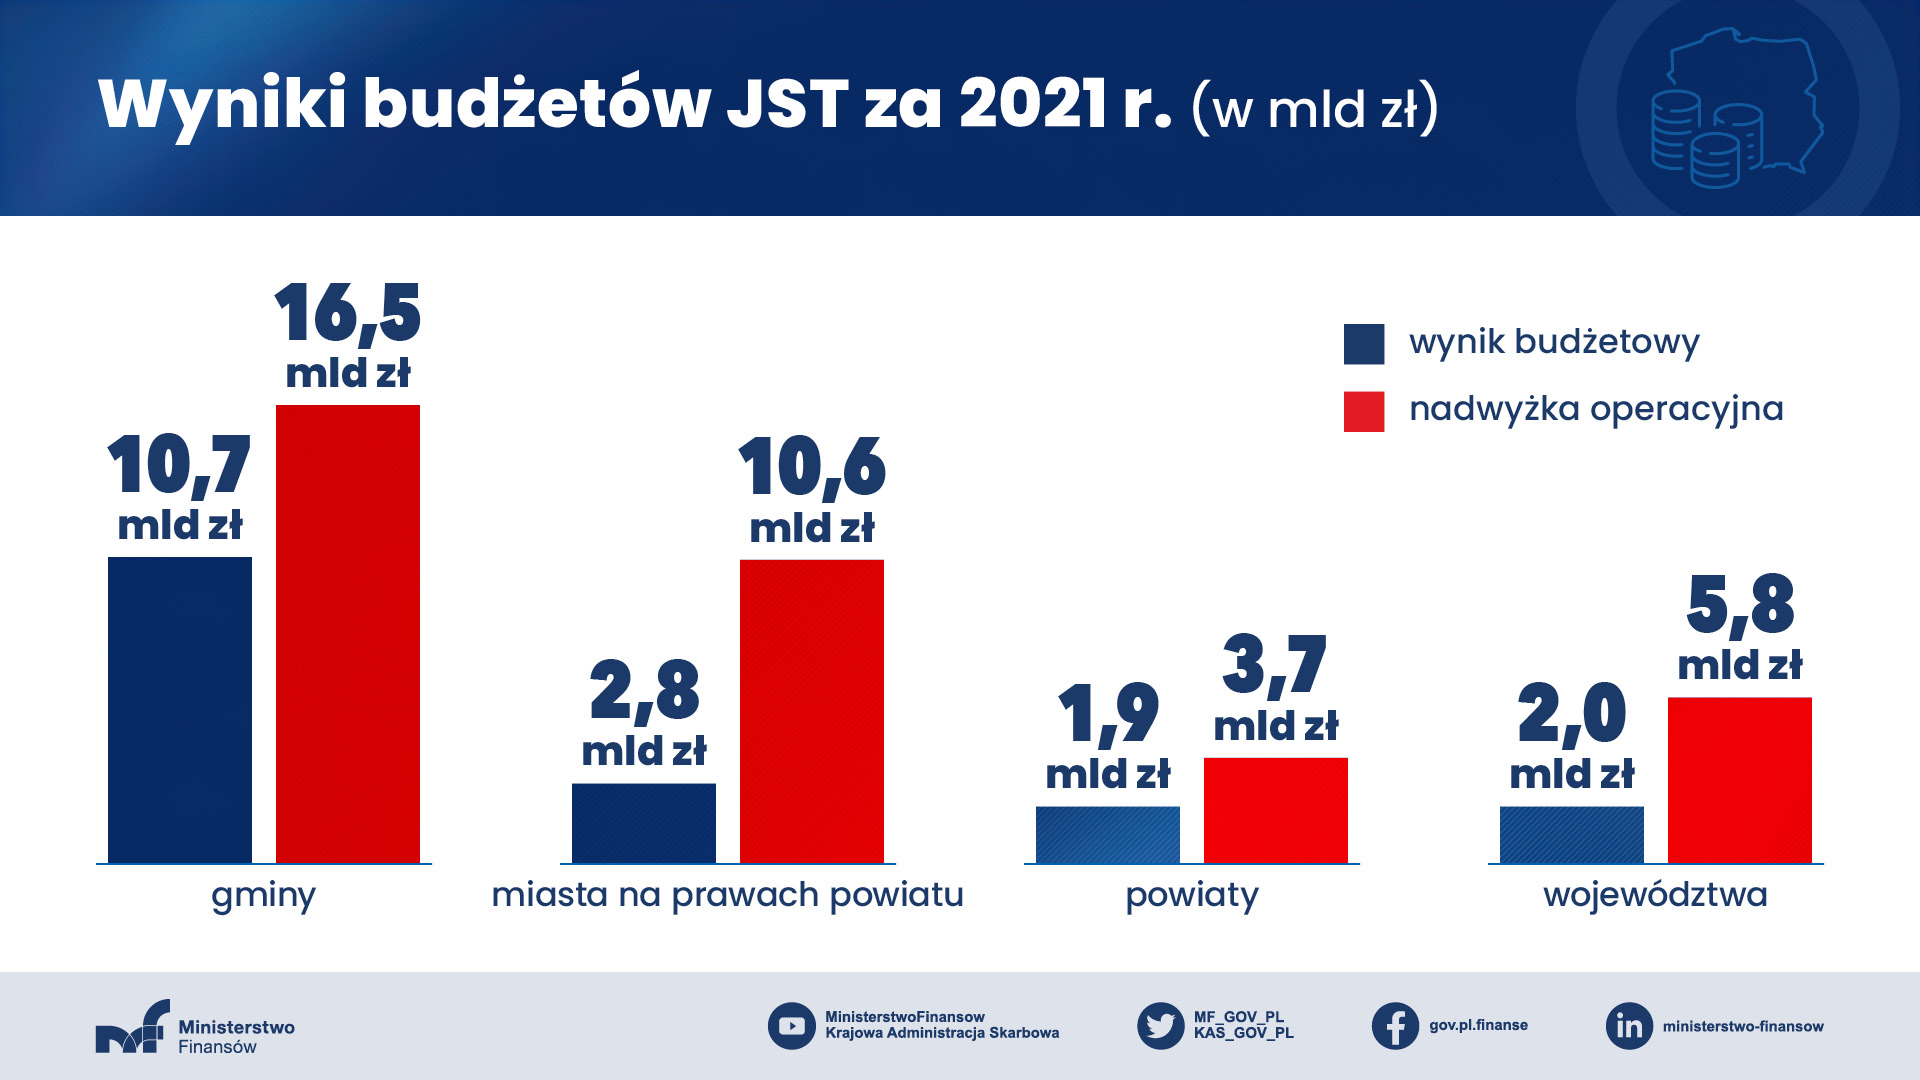 Wyniki budżetów JST za 2021 r. (w mld zł) wyniki budżetowe i nadwyżka operacyjna